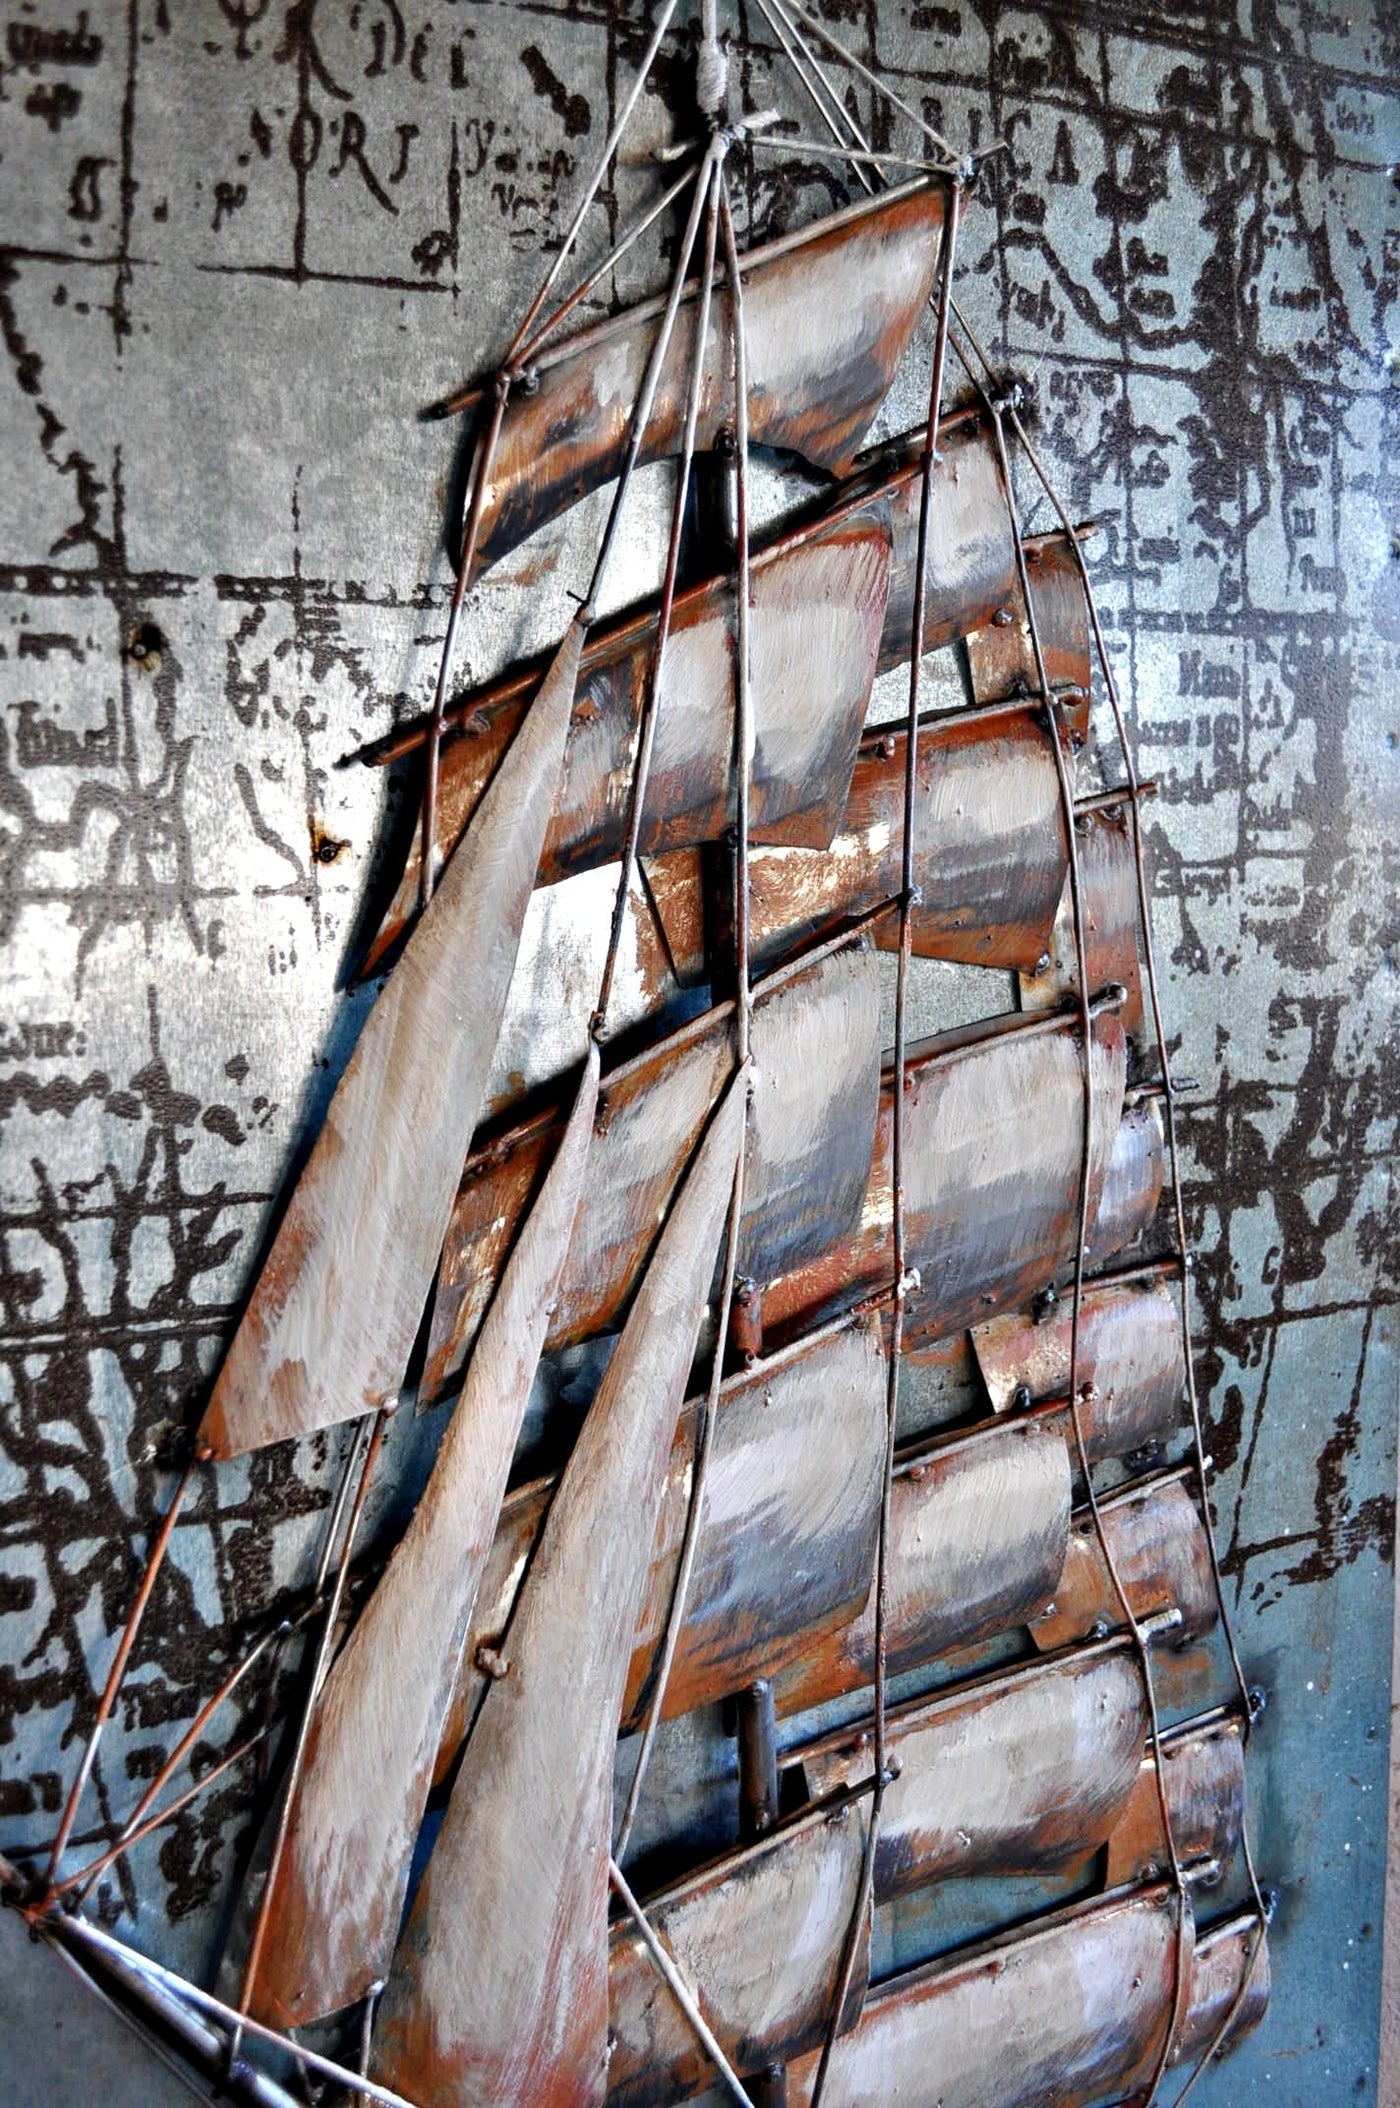 Wandbild aus Metall "Segelschiff mit Weltkarte auf dem Meer 100 x 60 cm Schöne Deko